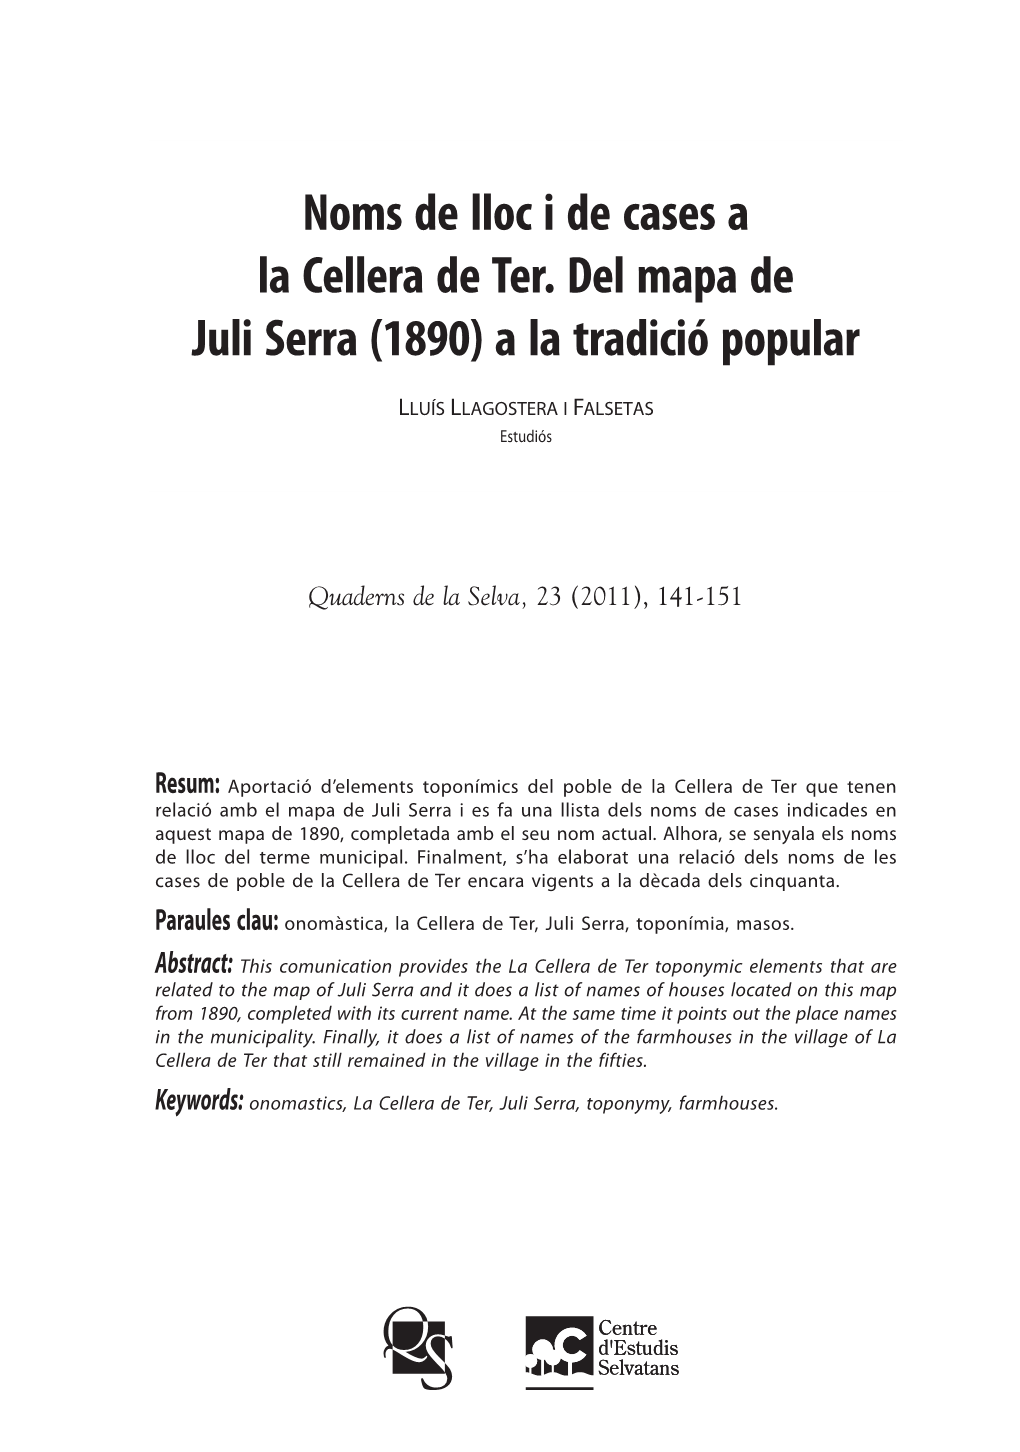 Noms De Lloc I De Cases a La Cellera De Ter. Del Mapa De Juli Serra (1890) a La Tradició Popular